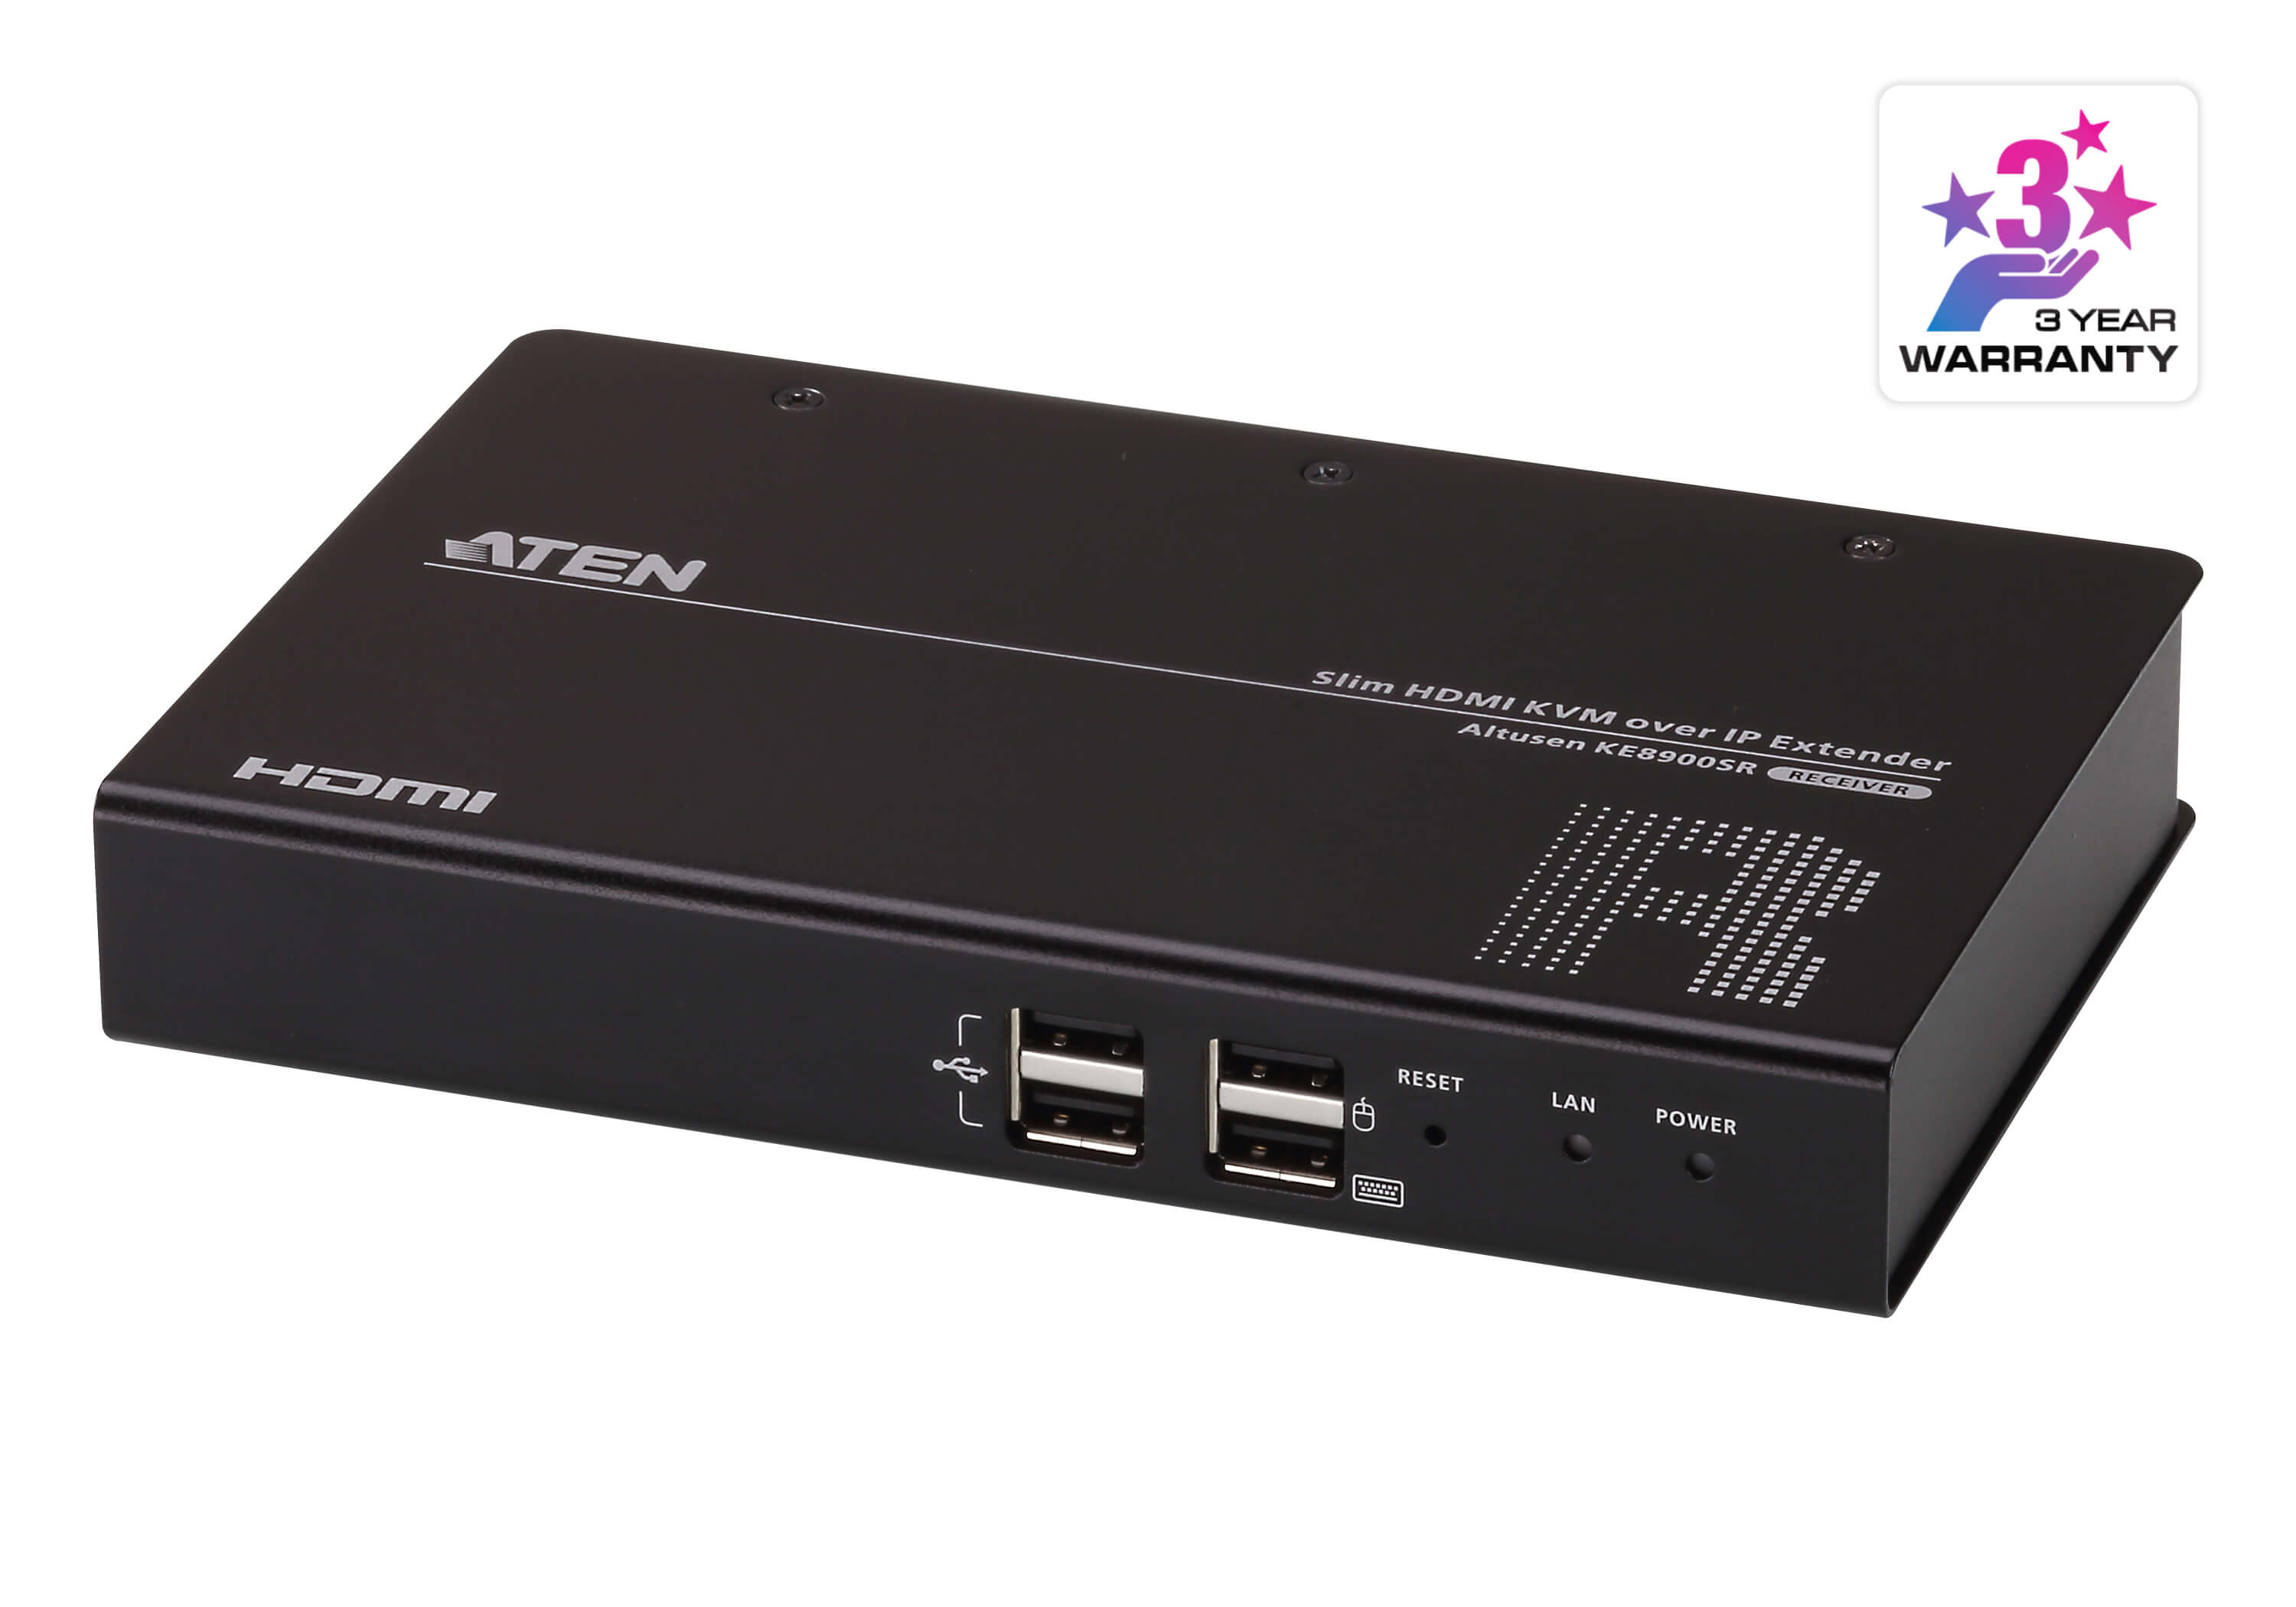 Удлинитель KVM (КВМ) ATEN KE8900SR, HDMI до 1920x1200, клавиатура USB, мышь USB, с доступом по IP (KE8900SR-AX-G) - фото 1